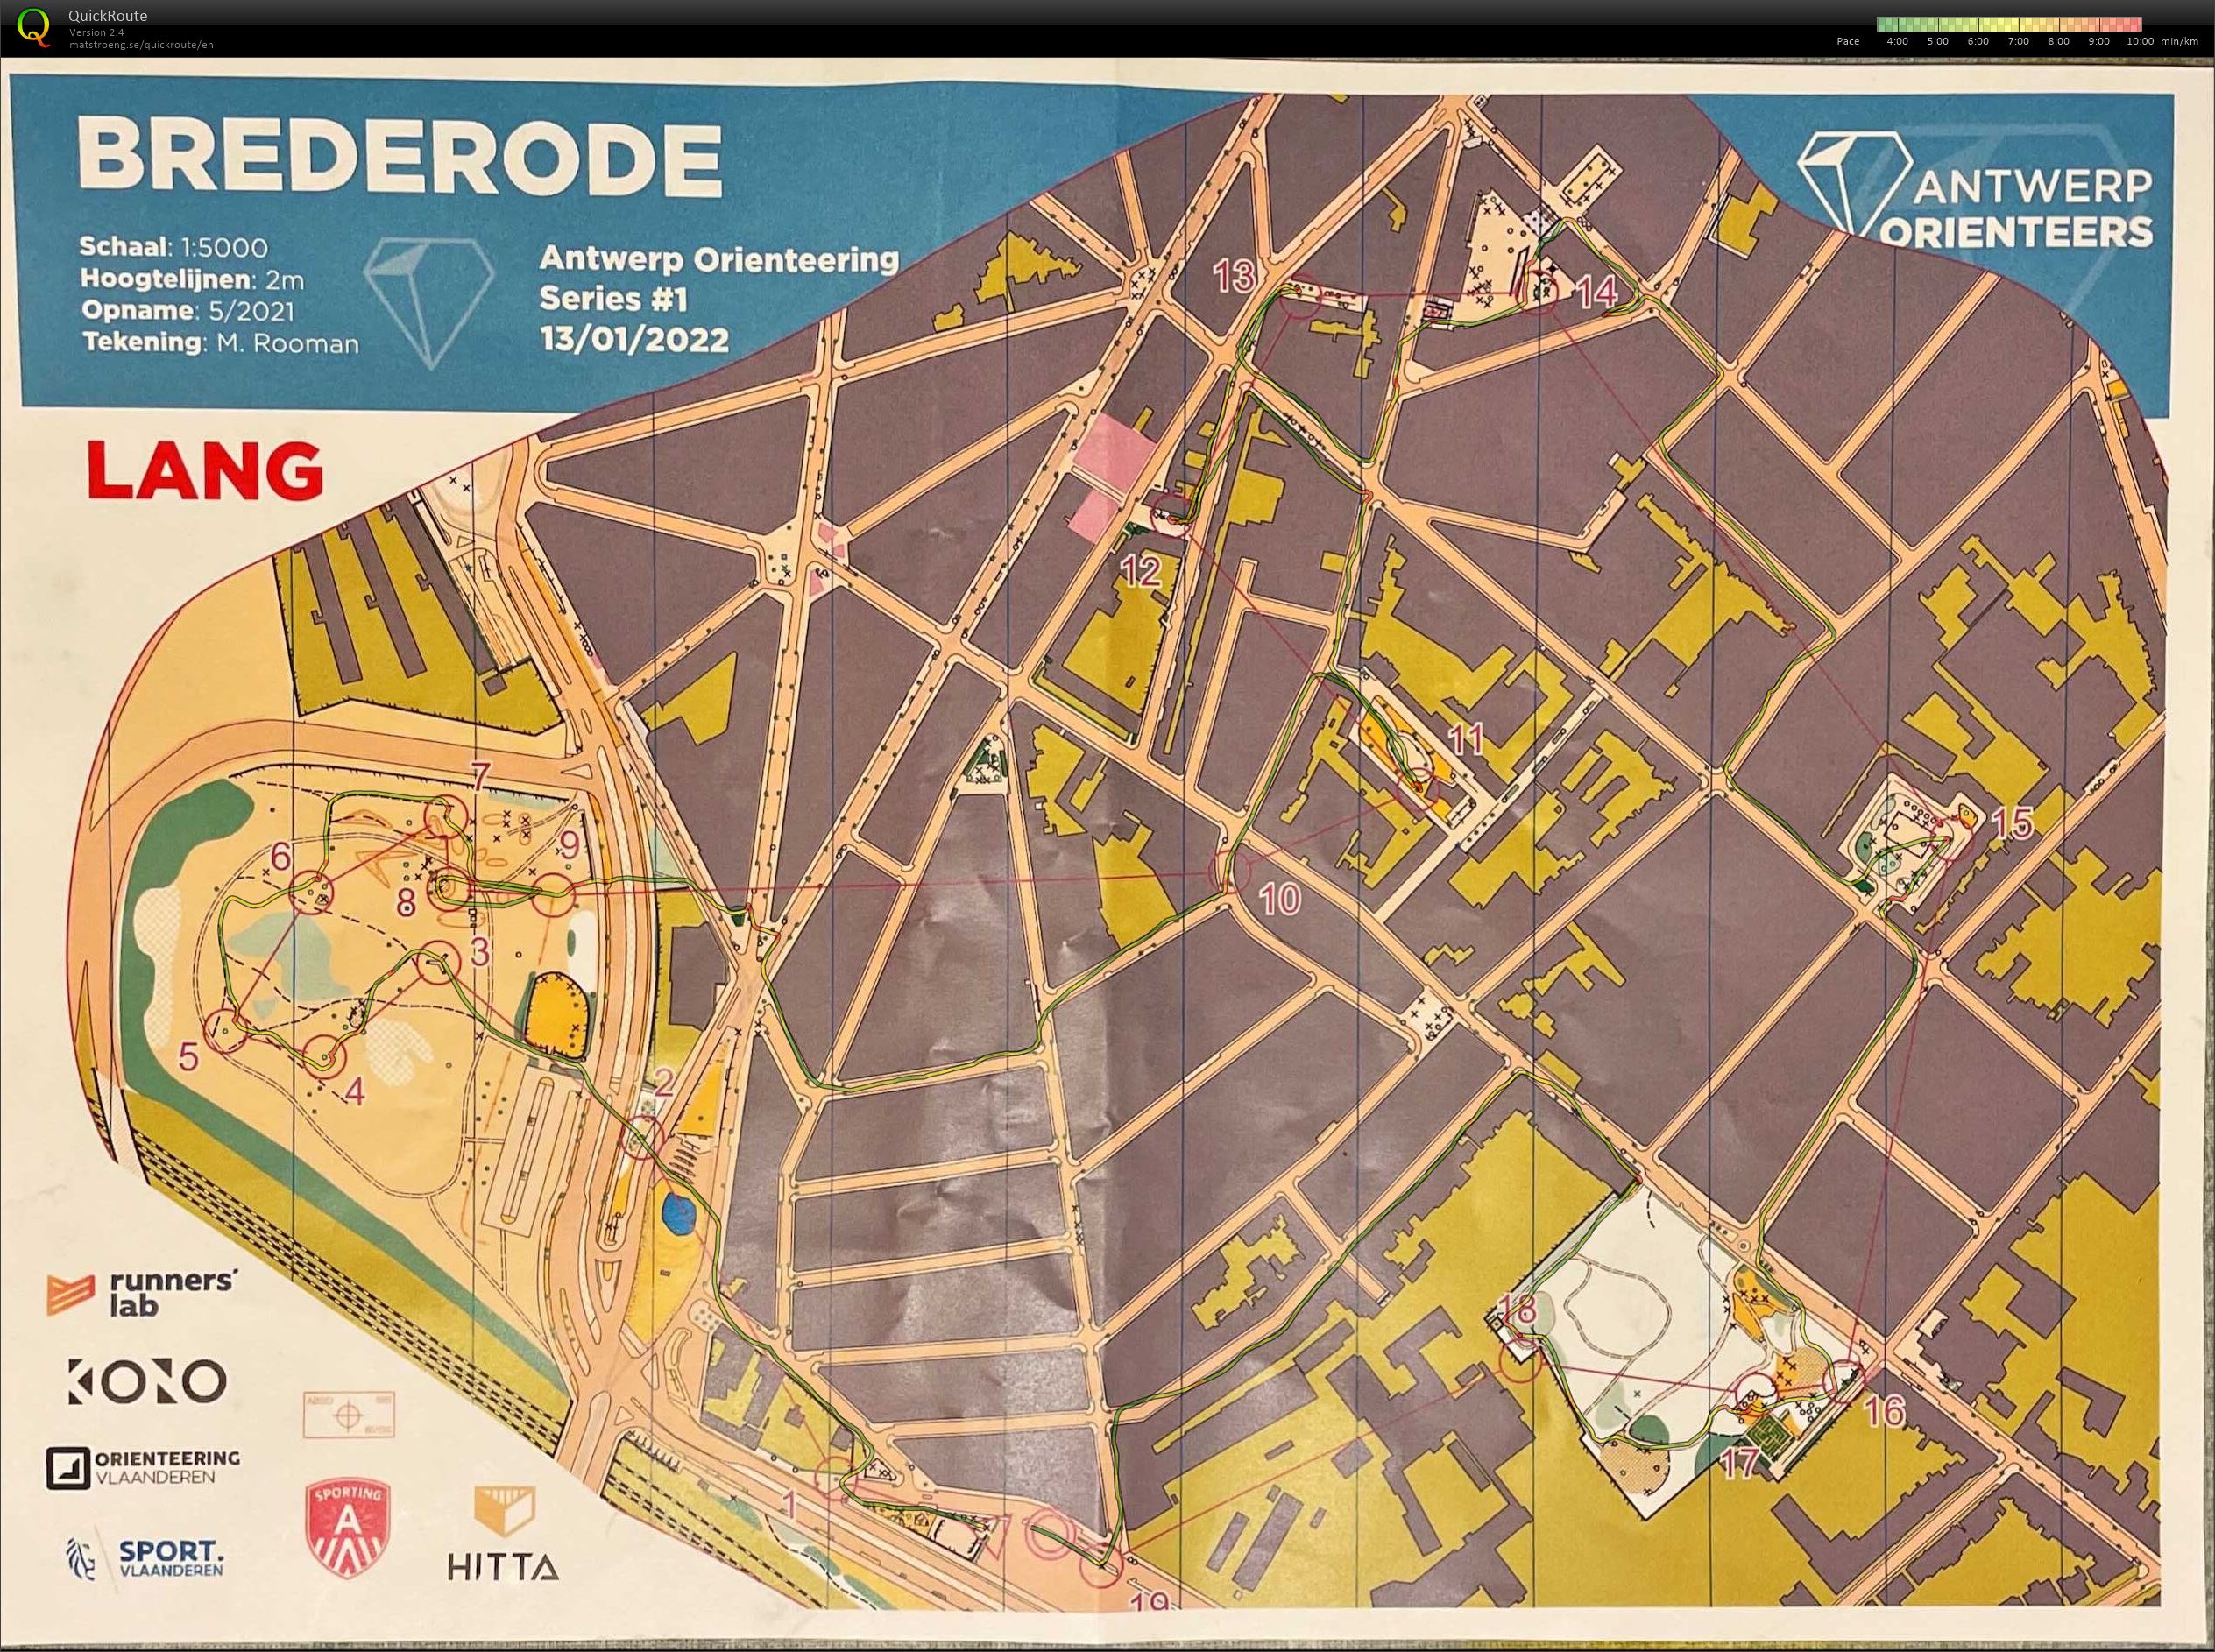 Antwerp Orienteering Series - Brederode - Lang (13/01/2022)